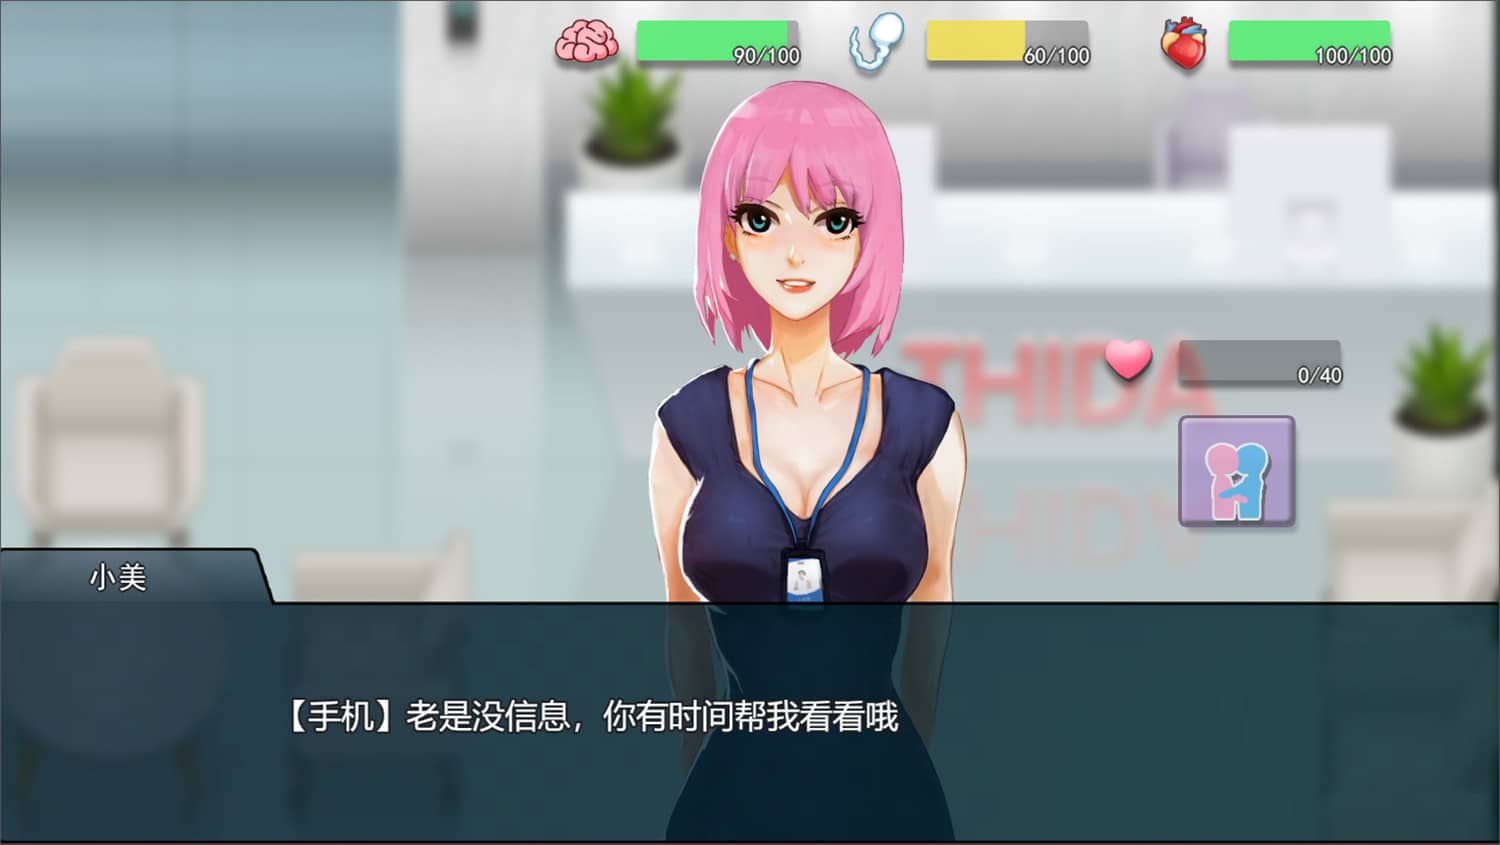 职场狂想曲/Workplace Rhapsody ver2.010 官方中文版 整合所有DLC SLG游戏+存档 1.1G插图7